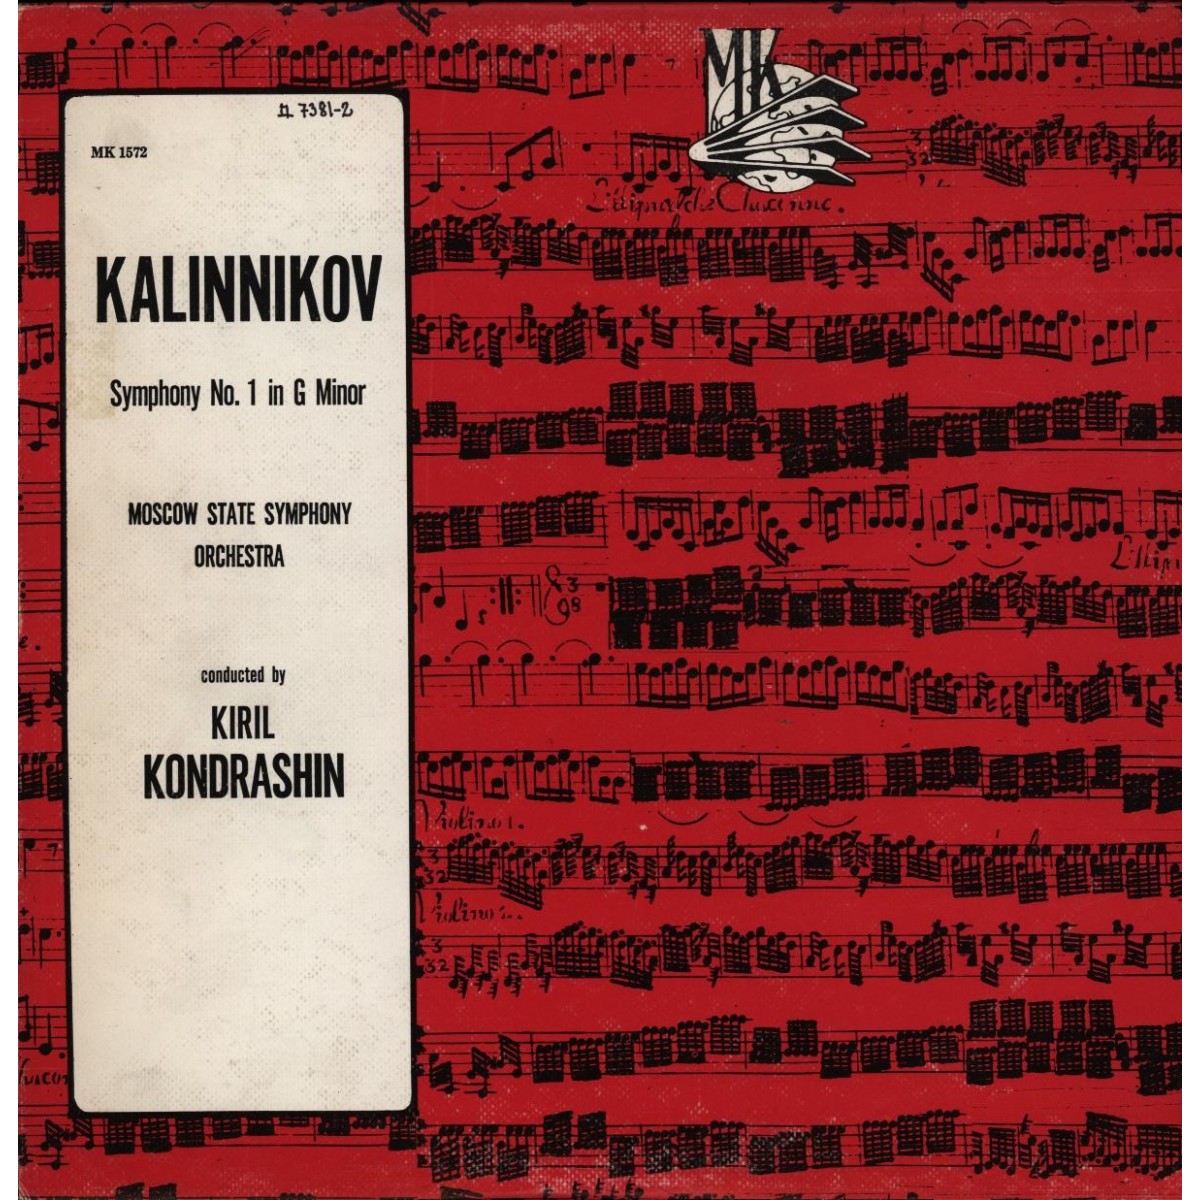 В. КАЛИННИКОВ (1866-1901) Симфония № 1 соль минор (К. Кондрашин)